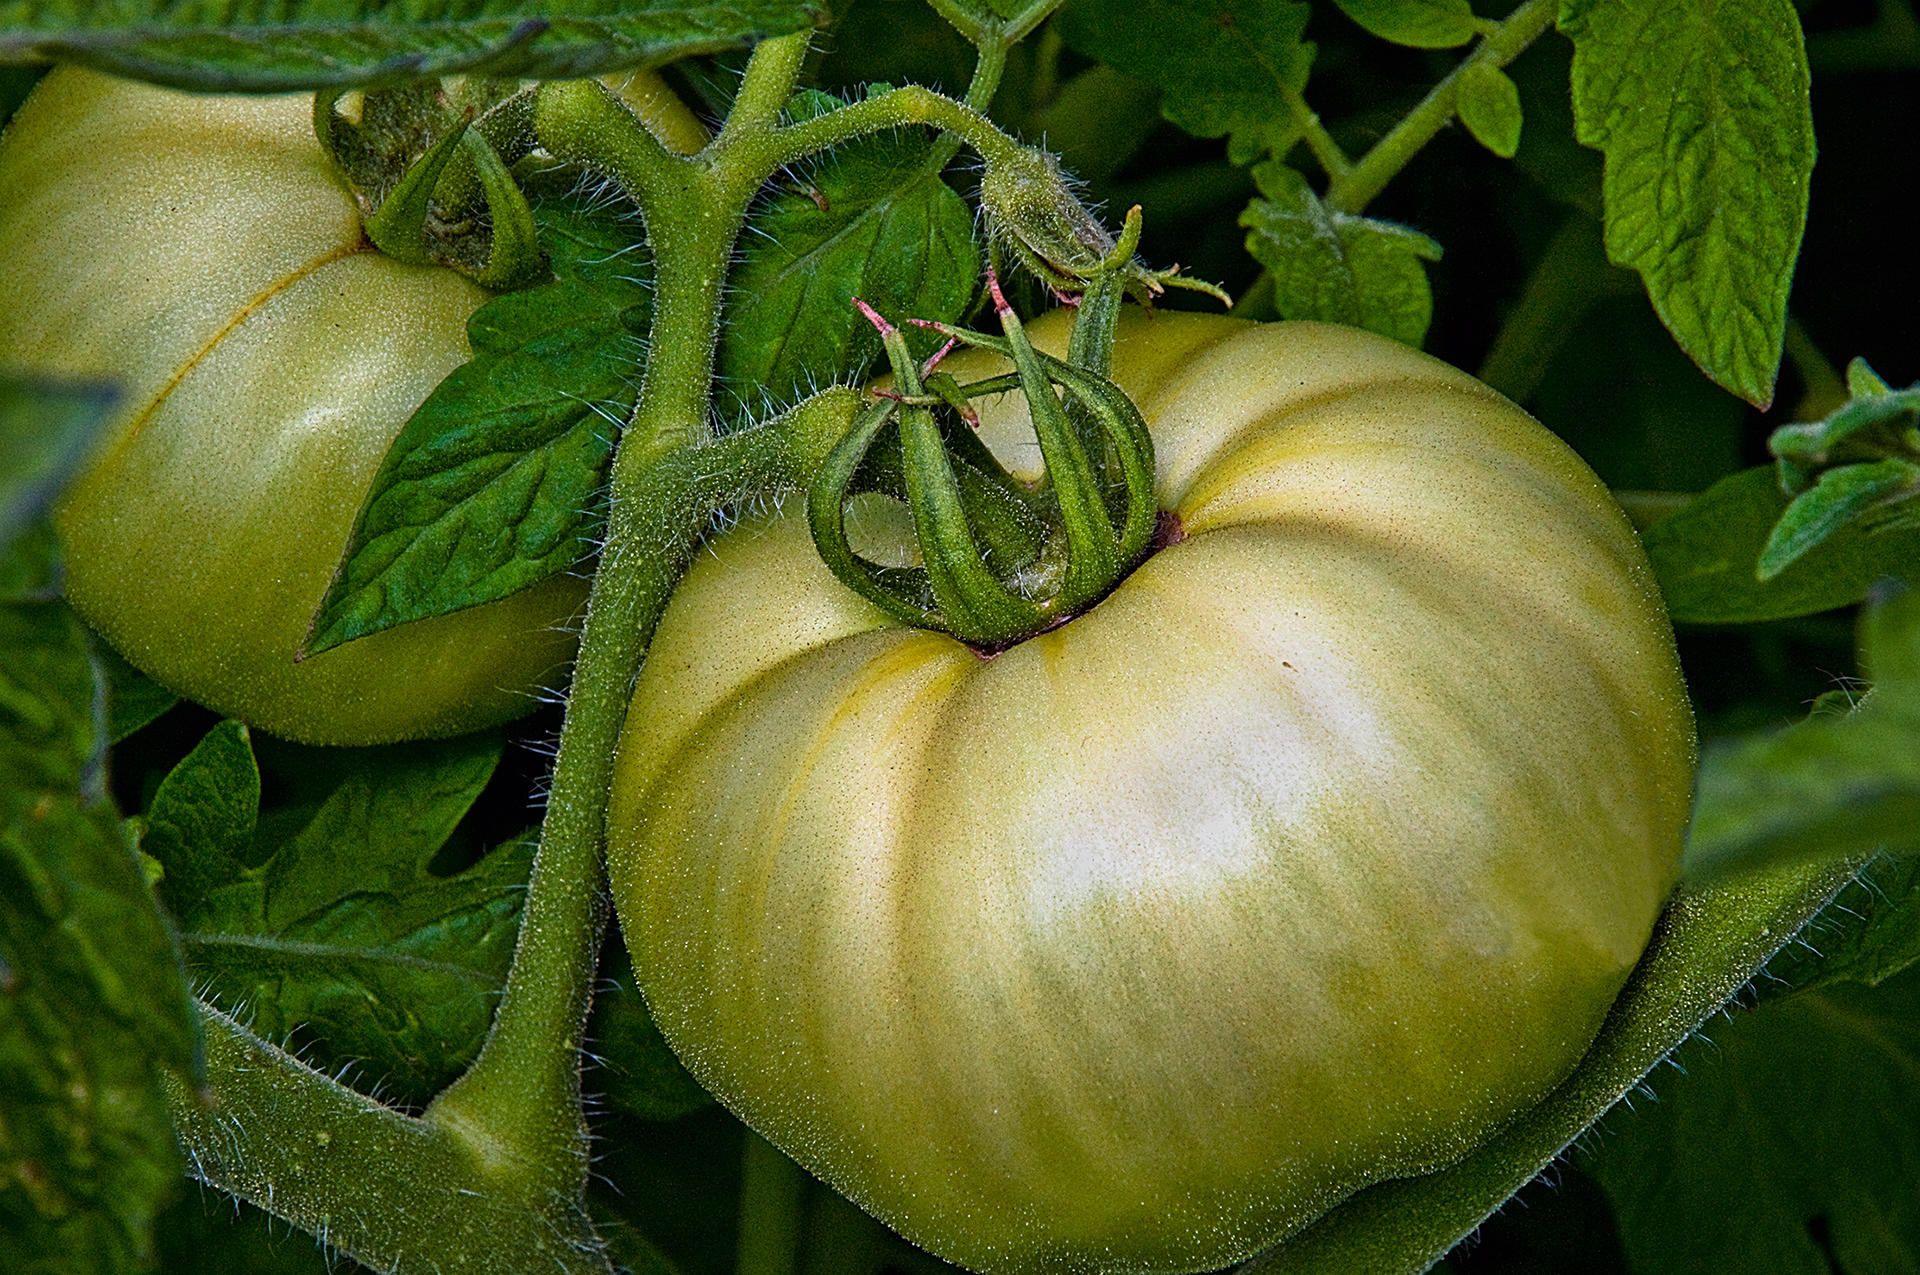 Astoria Tomato, 2009